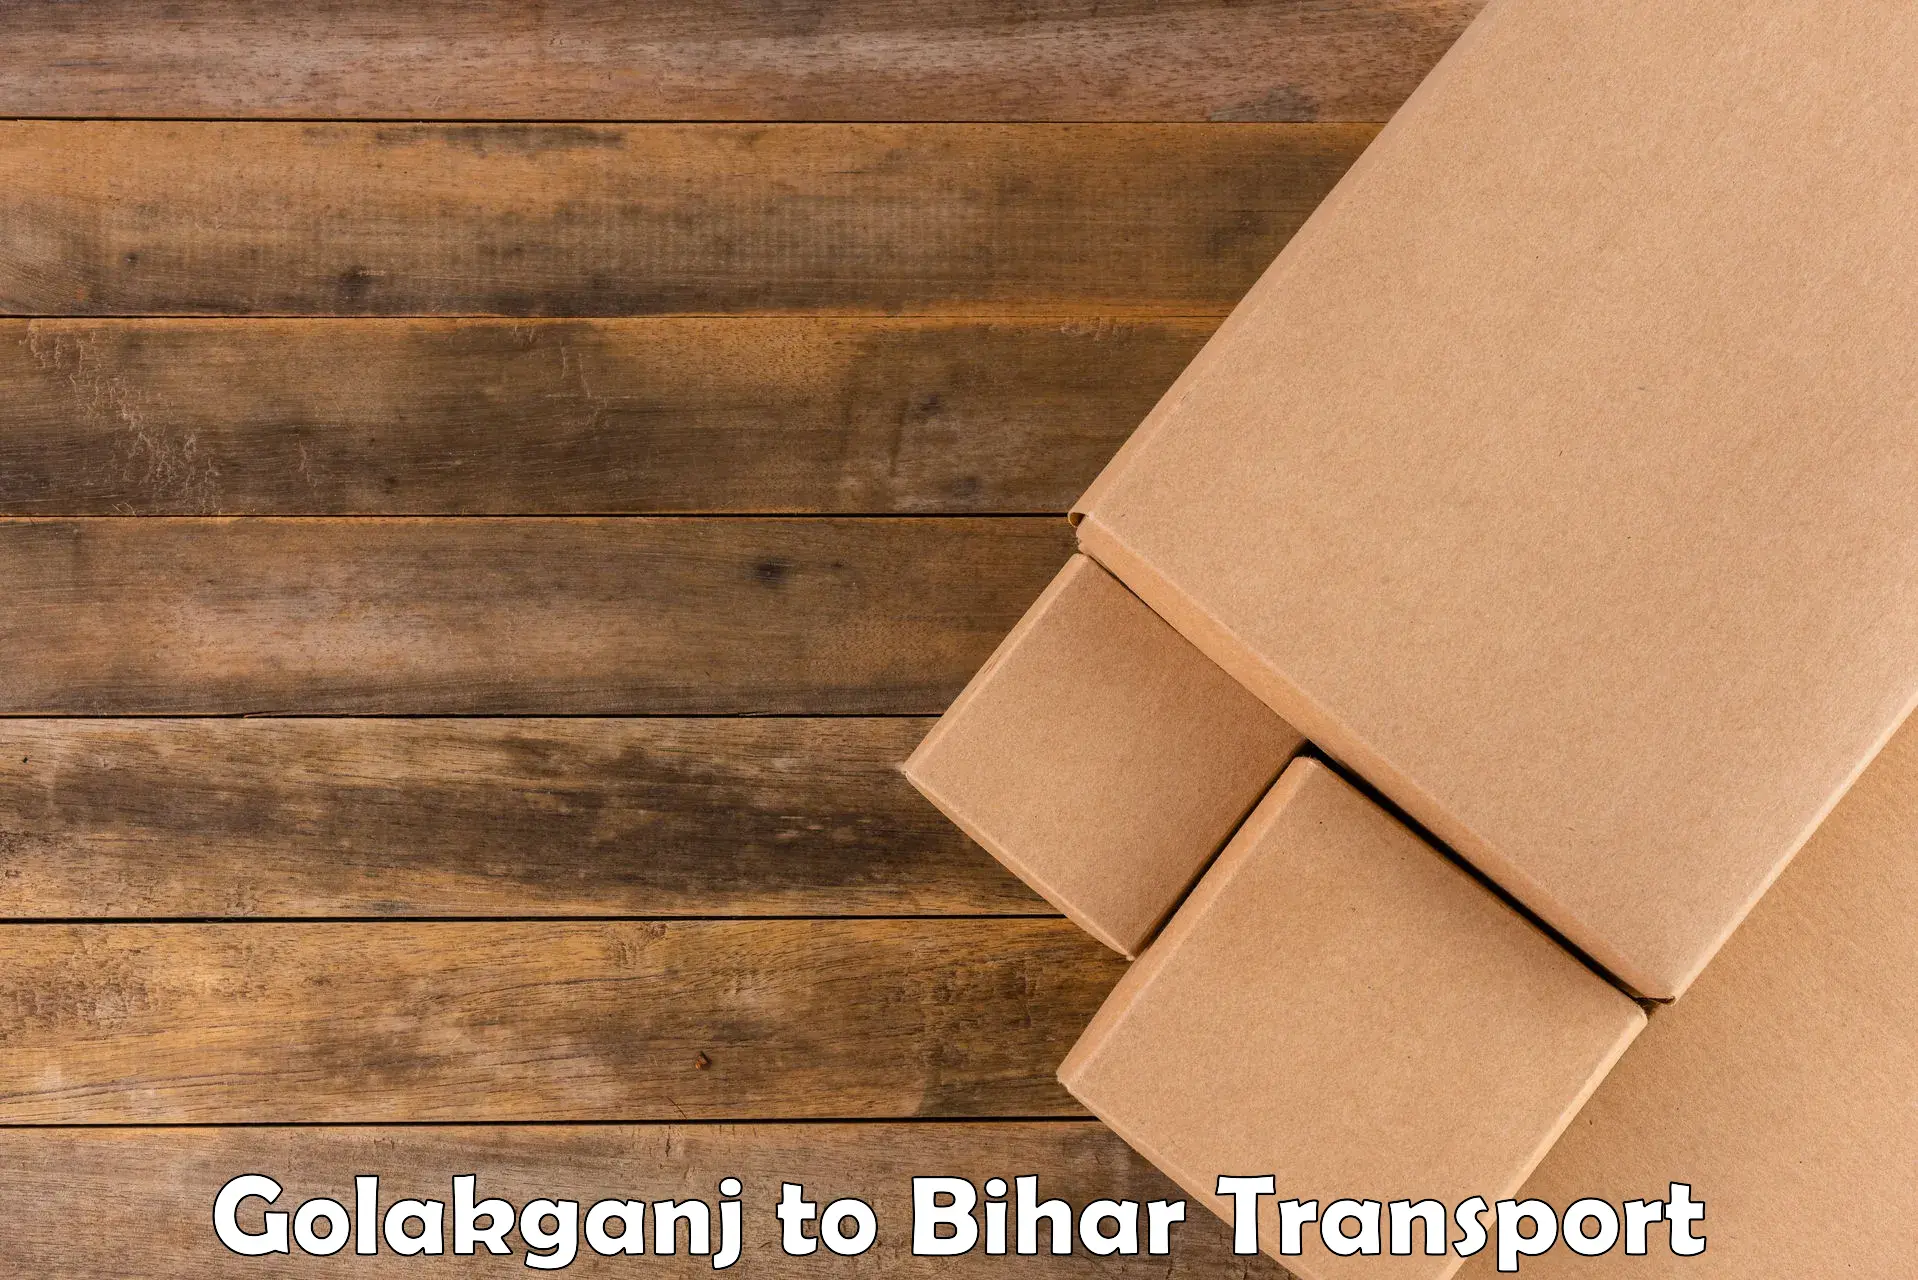 Online transport service Golakganj to Ghanshyampur